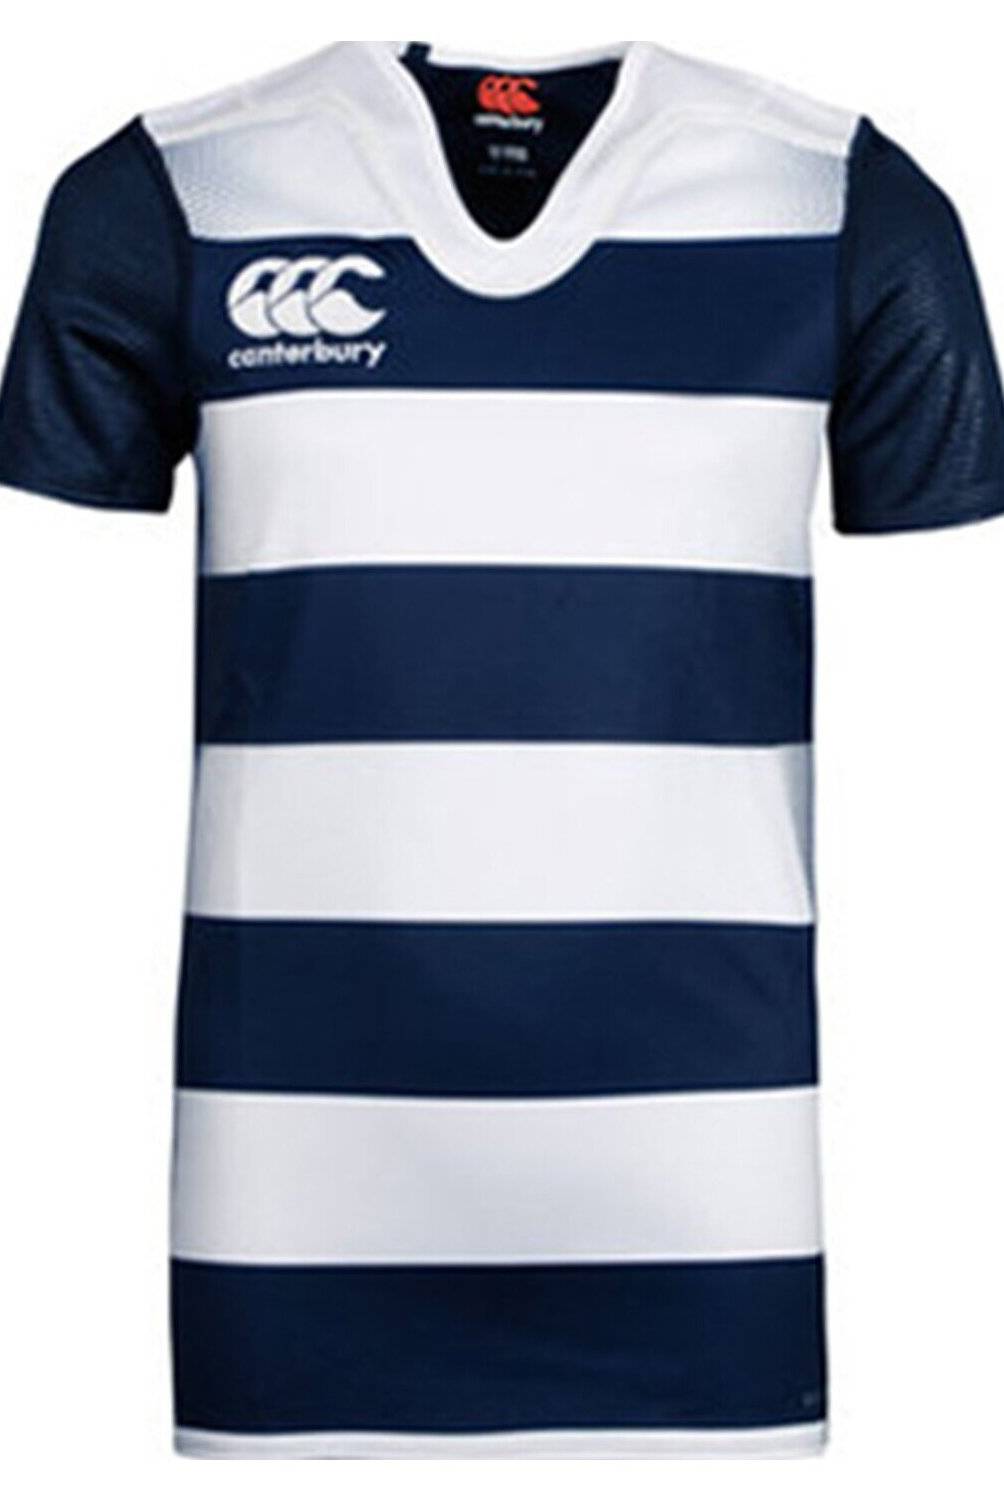 Canterbury - Teamwear Canterbury Rugby